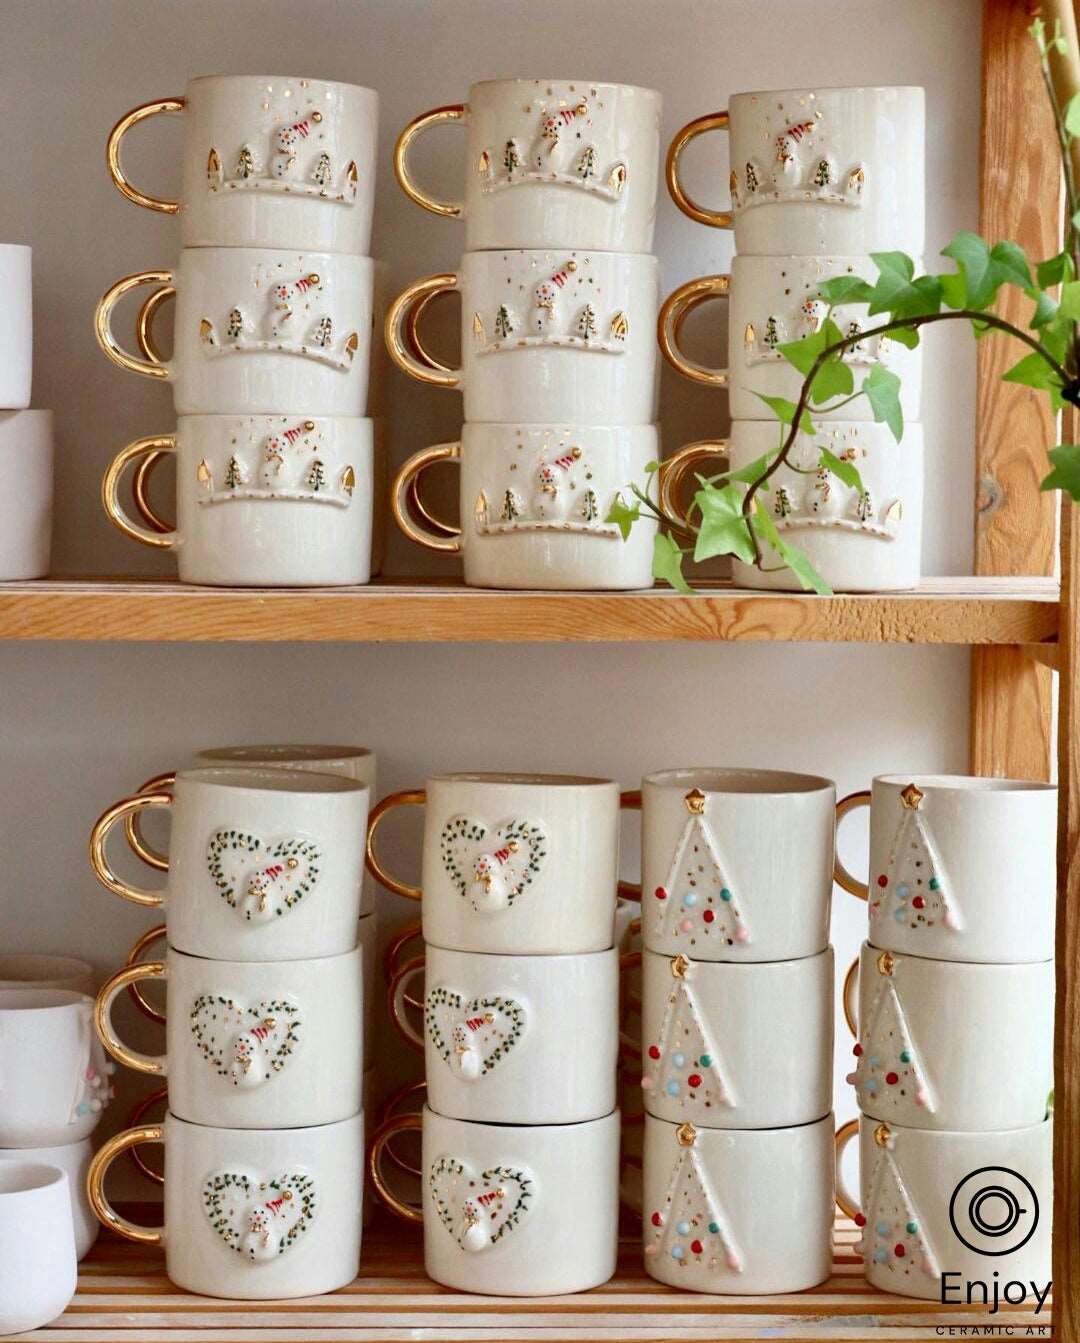 Handcrafted Christmas Tree Ceramic Coffee Mug - A Festive 10oz Handmade  Pottery Coffee Mug – Enjoy Ceramic Art